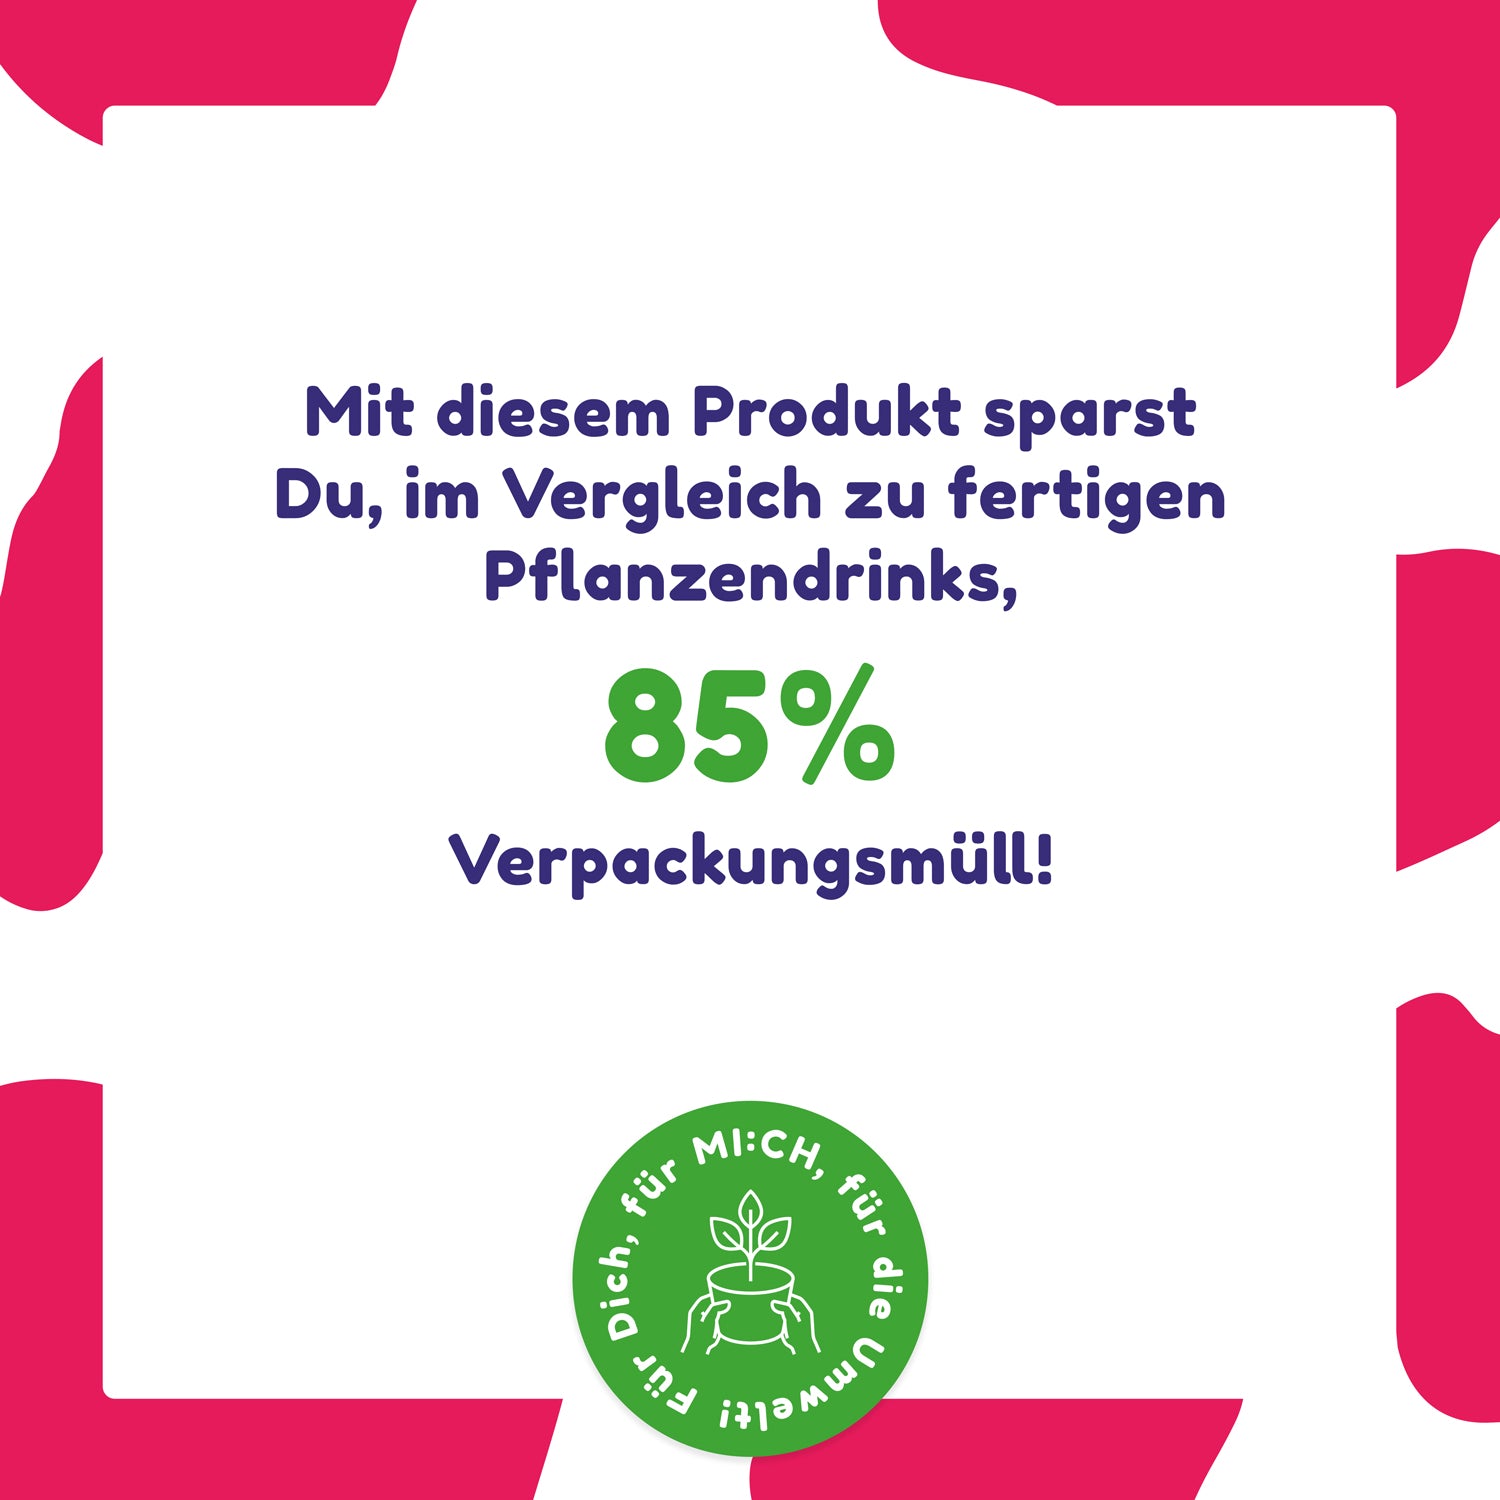 Drinkmich Hafermilchpulver erdbeere Produktinformationen dass 85% Verpackungsmüll gespart werden